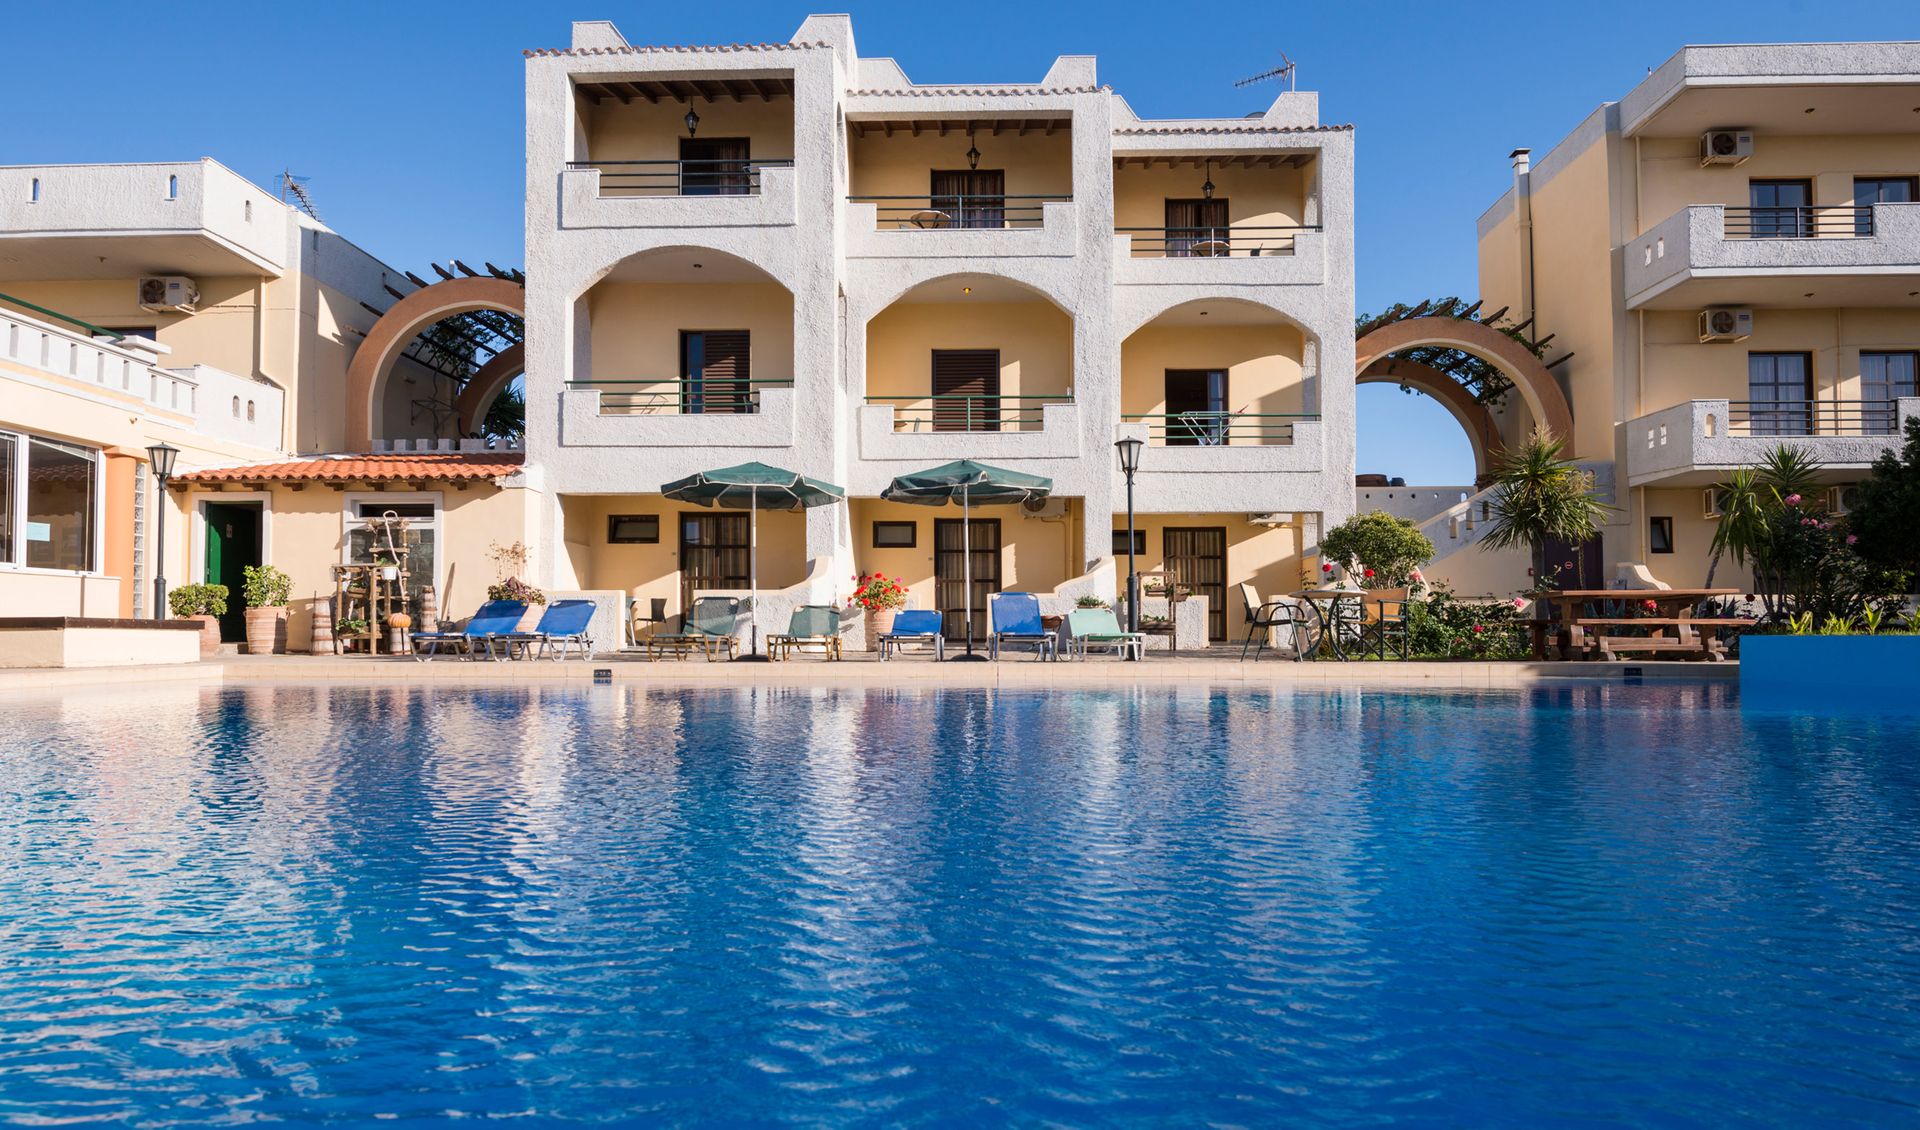 Nireas Hotel - Χανιά, Κρήτη ✦ 2 Ημέρες (1 Διανυκτέρευση) ✦ 2 άτομα + 1 παιδί έως 11 ετών ✦ 1 ✦ έως 30/09/2022 ✦ Κοντά στην Παραλία!